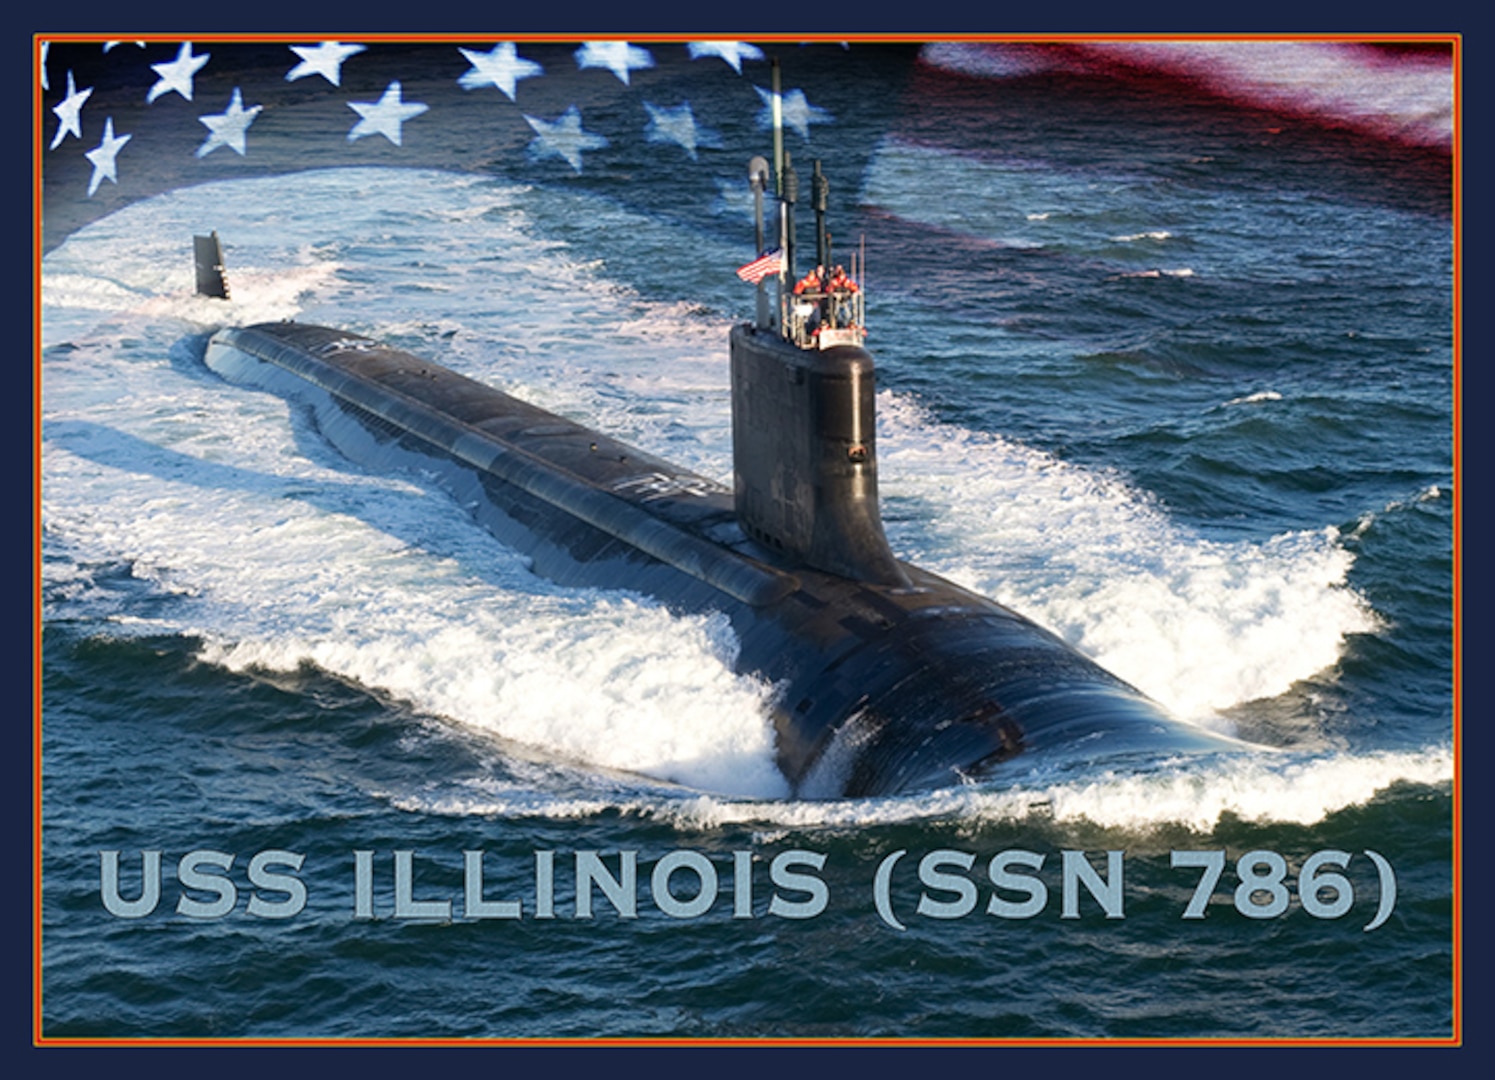 120621-N-ZZ999-002
WASHINGTON (June 21, 2012) An artist rendering of the Virginia-class submarine USS Illinois (SSN 786). 